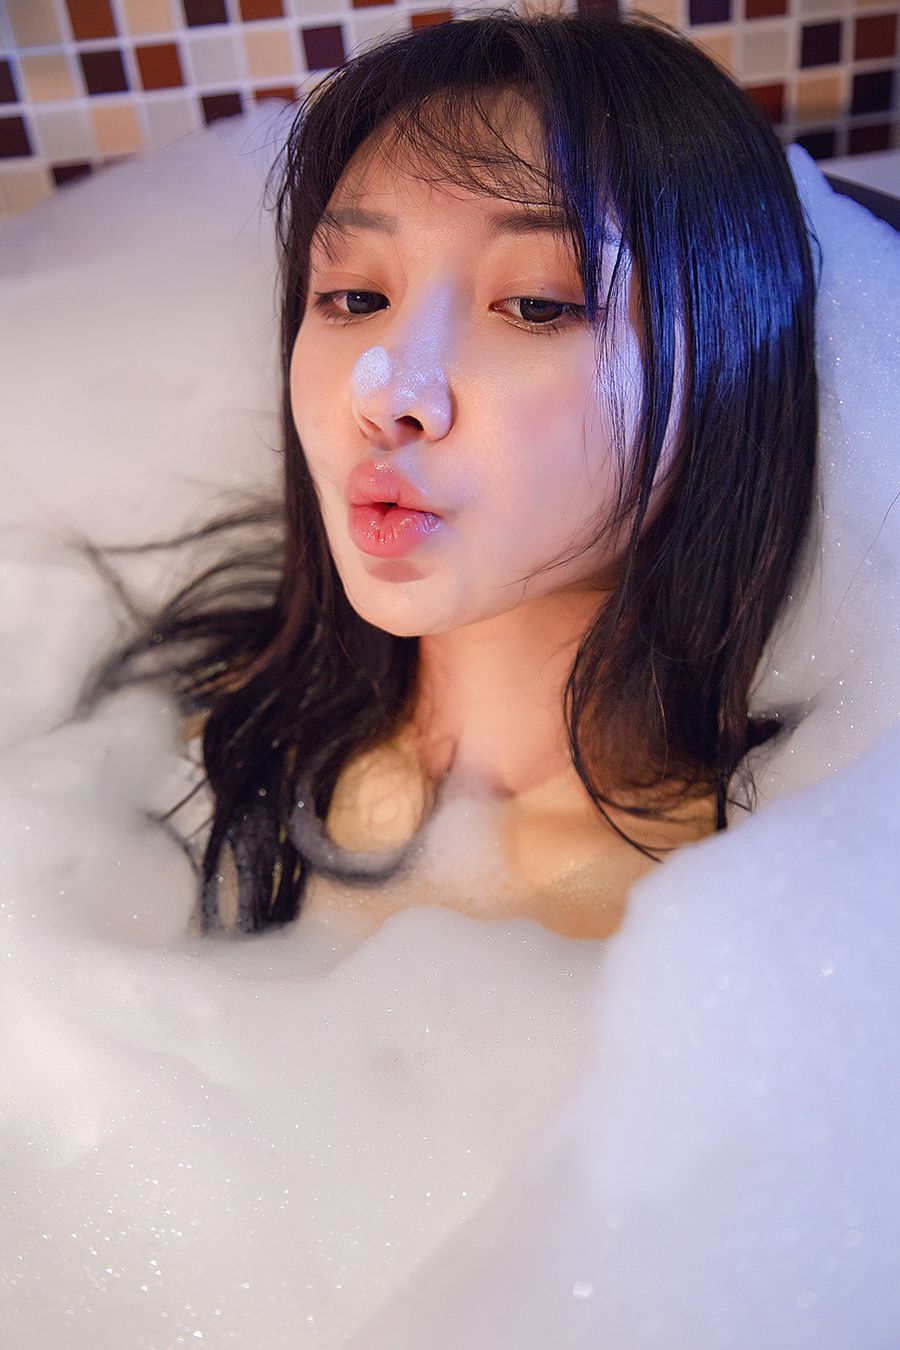 TouTiao Girls Vol. 588 Bubble Love